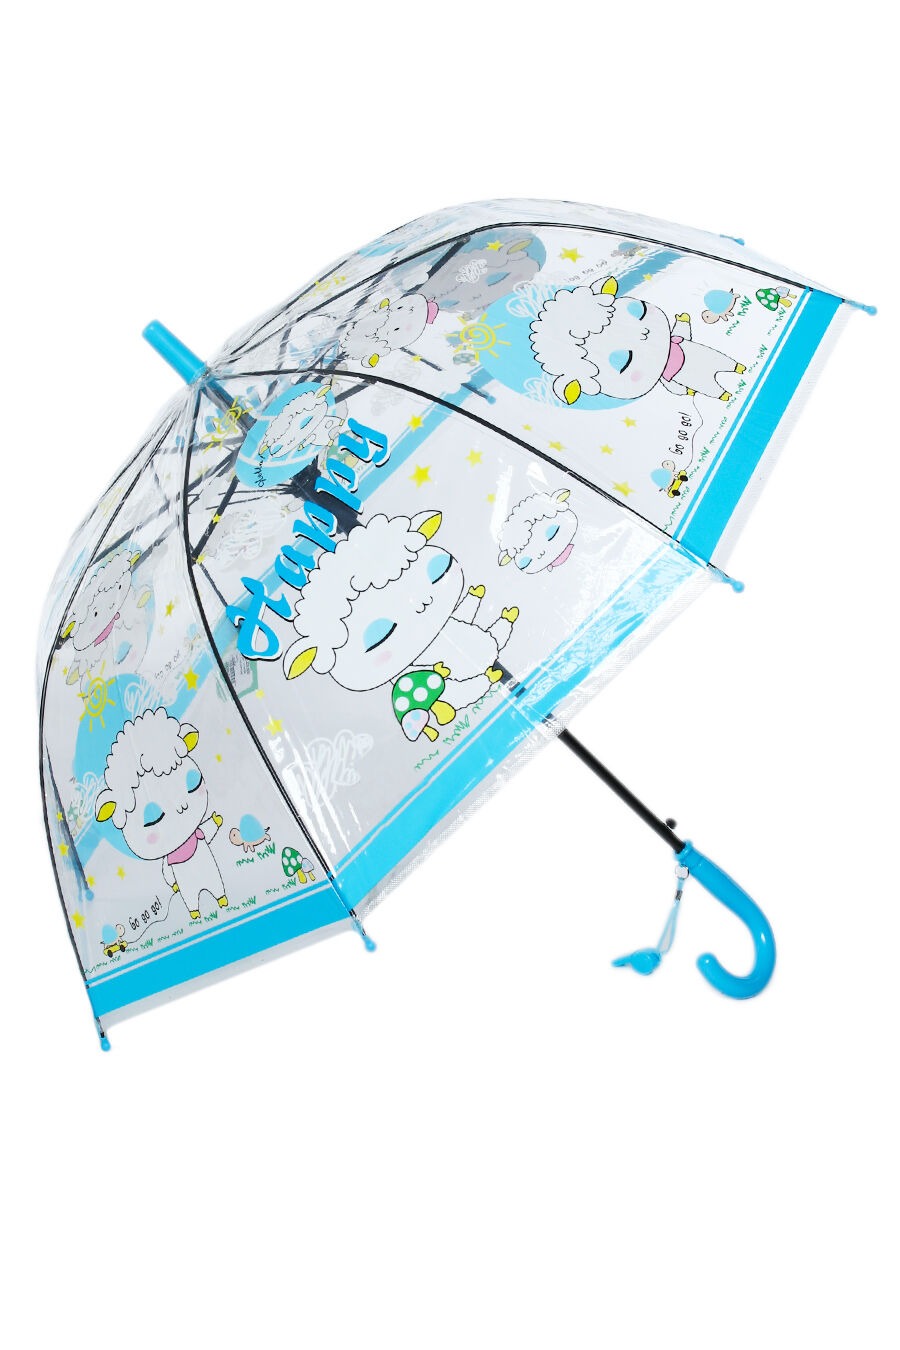 Зонт дет. Universal 117-3 полуавтомат трость (голубой)